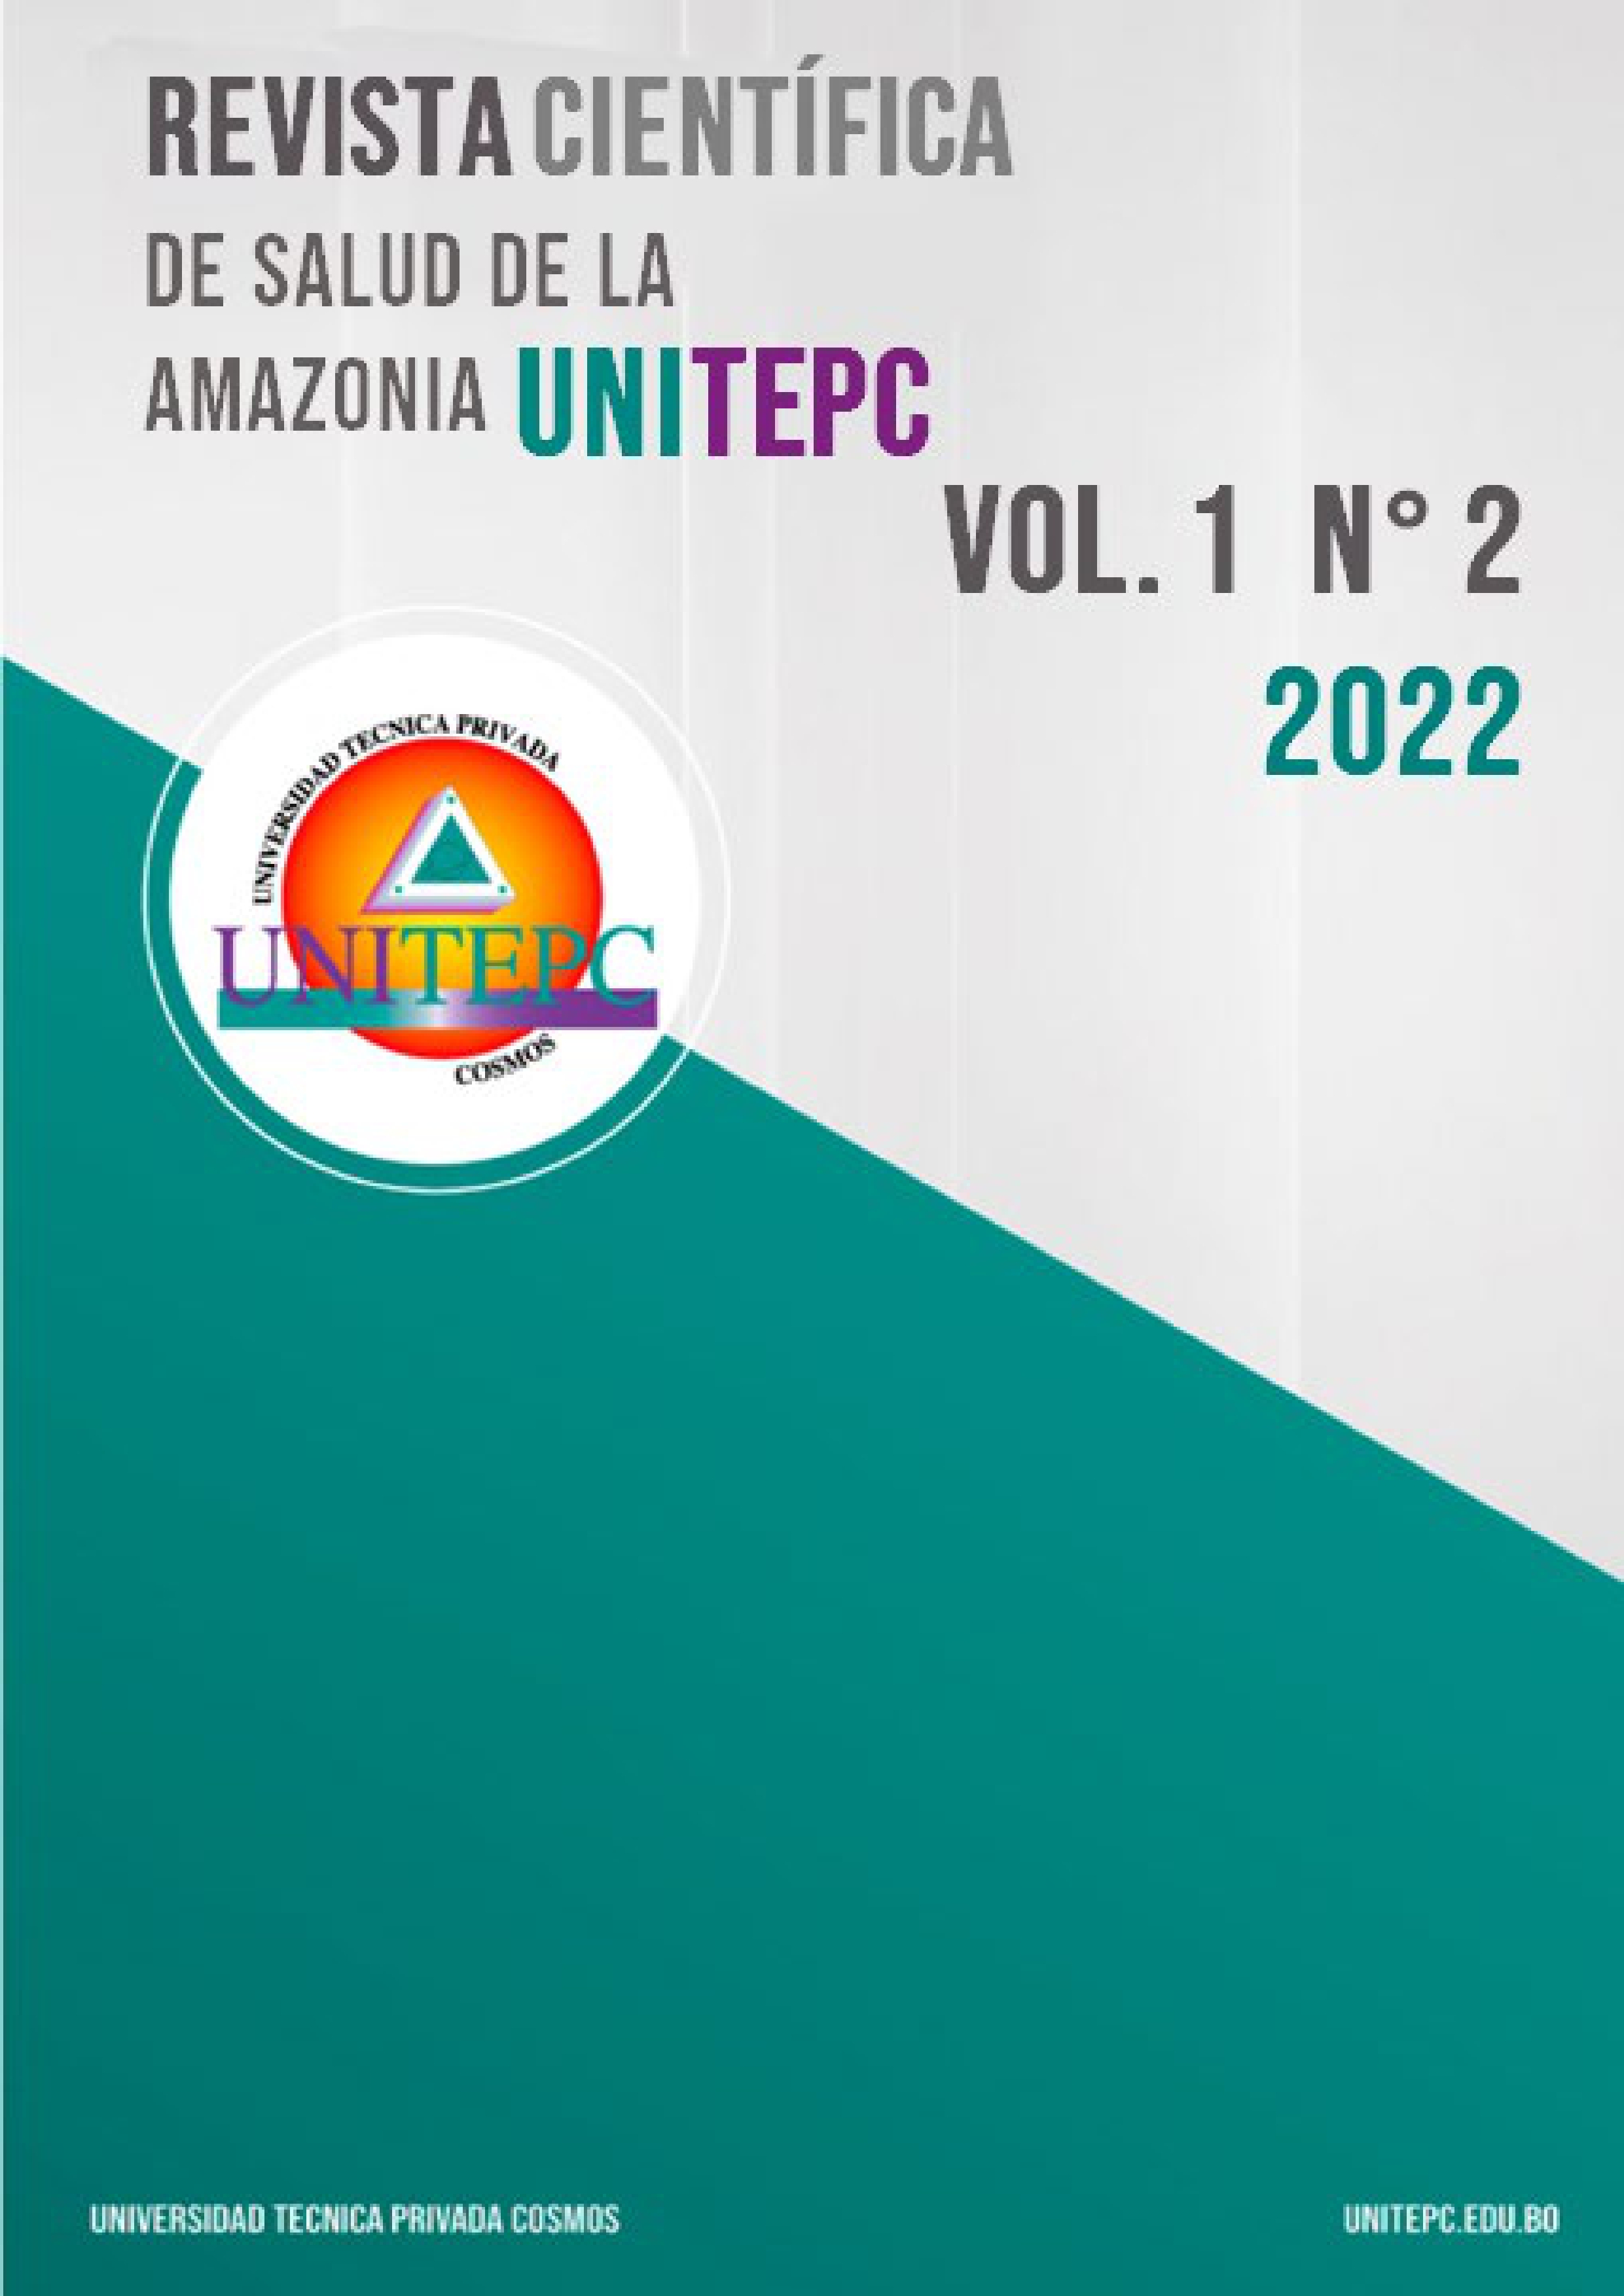 					Visualizar v. 1 n. 2 (2022): Revista Científica de Salud de la Amazonia UNITEPC
				